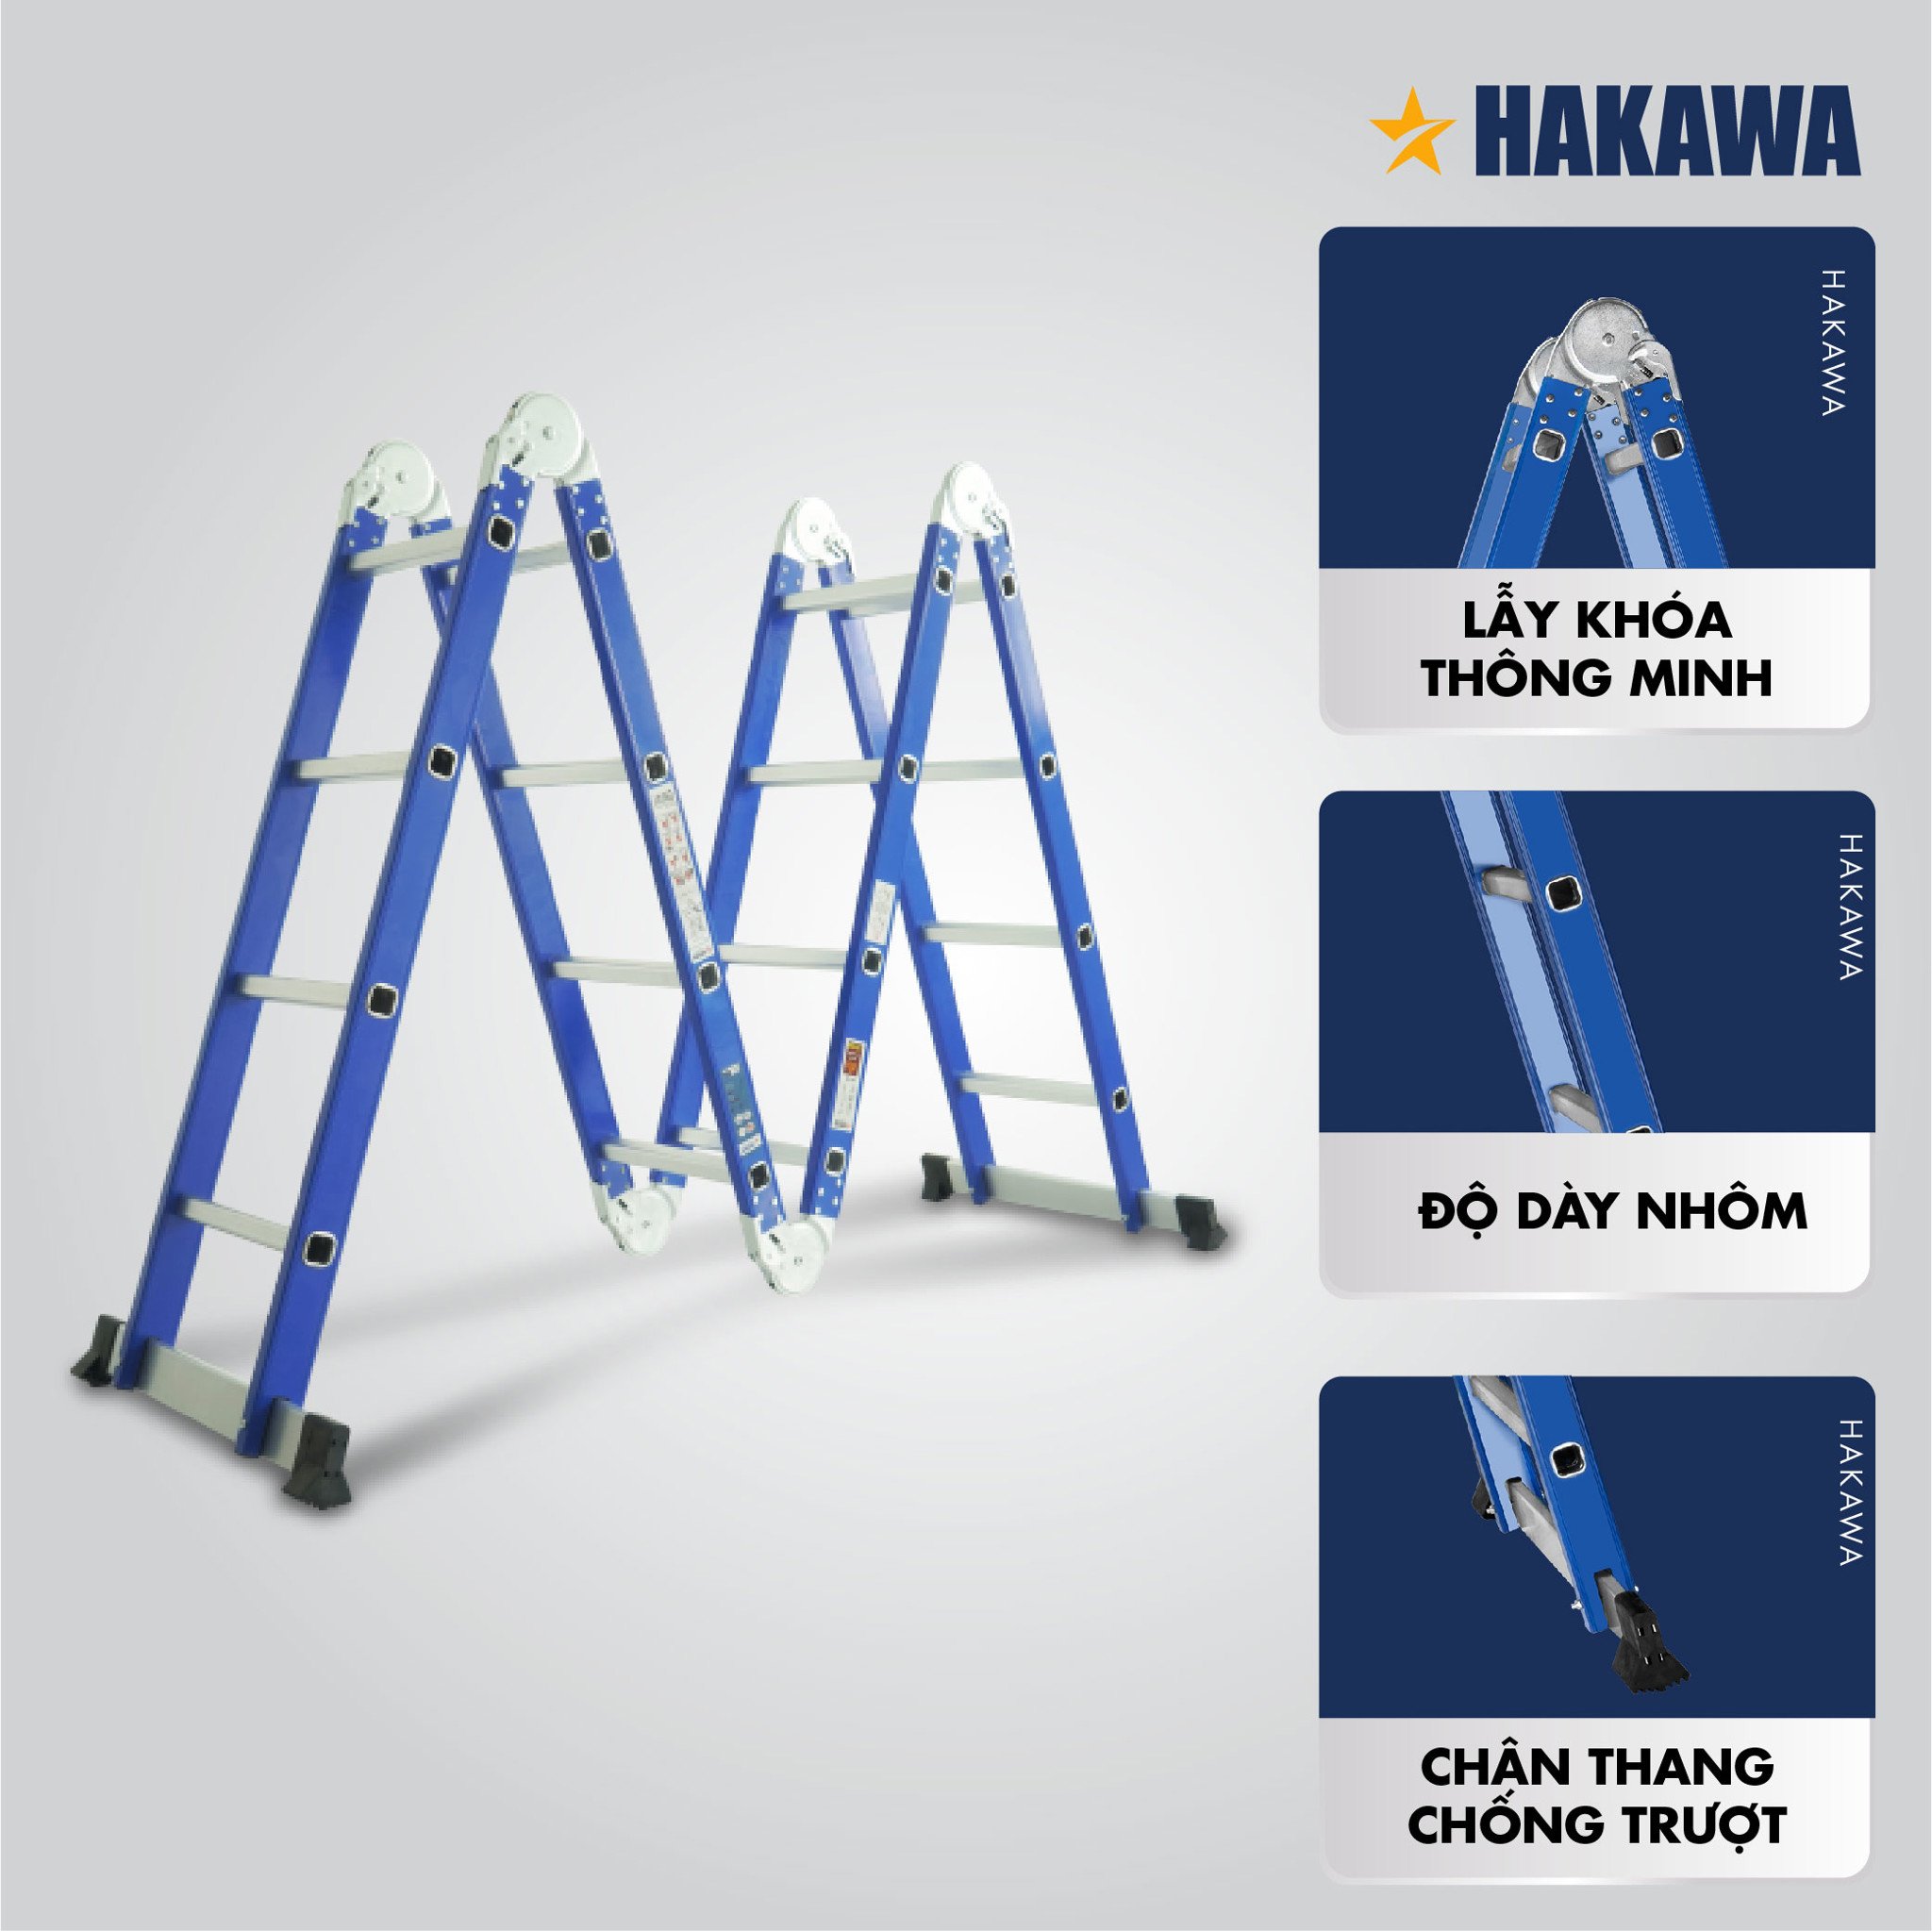 Than nhôm gấp HAKAWA cấu tạo chắc chắn, lãy khóa thông minh cho mọi công việc trên cao